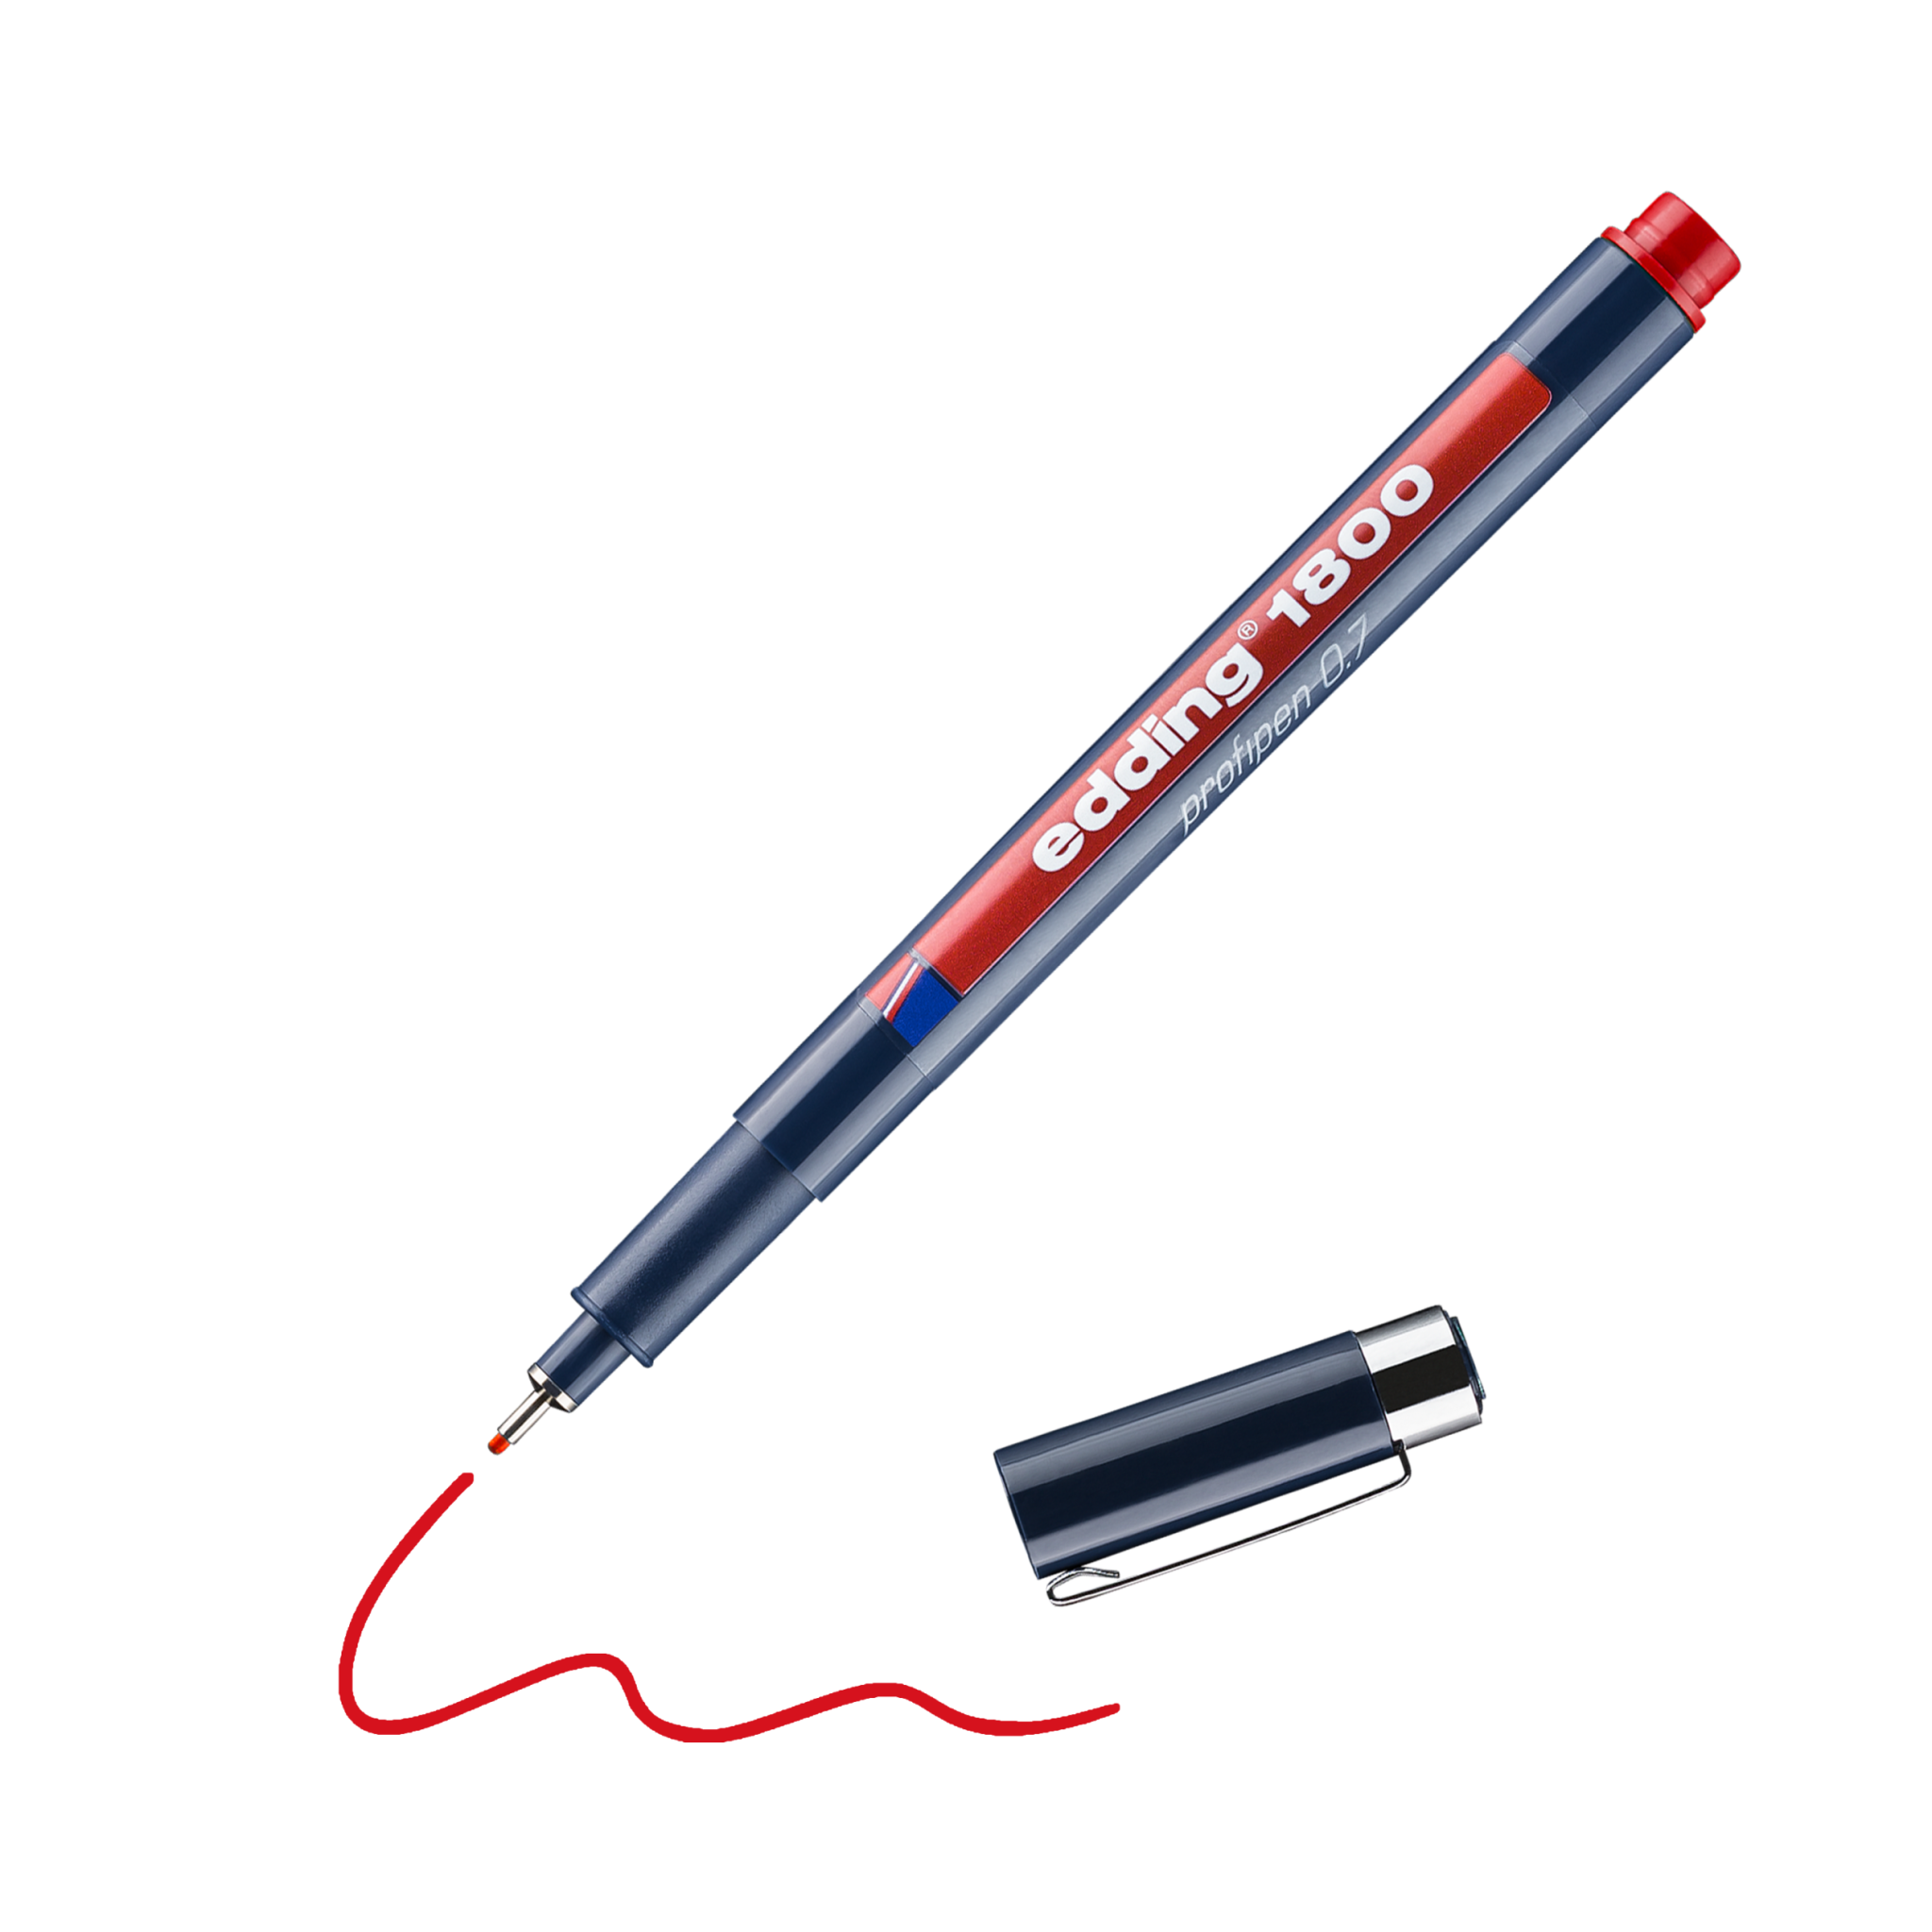 Ein roter edding 1800 Präzisionsfeinschreiber mit abgenommener Kappe, der eine rote Linie auf schwarzem Hintergrund zeichnet.